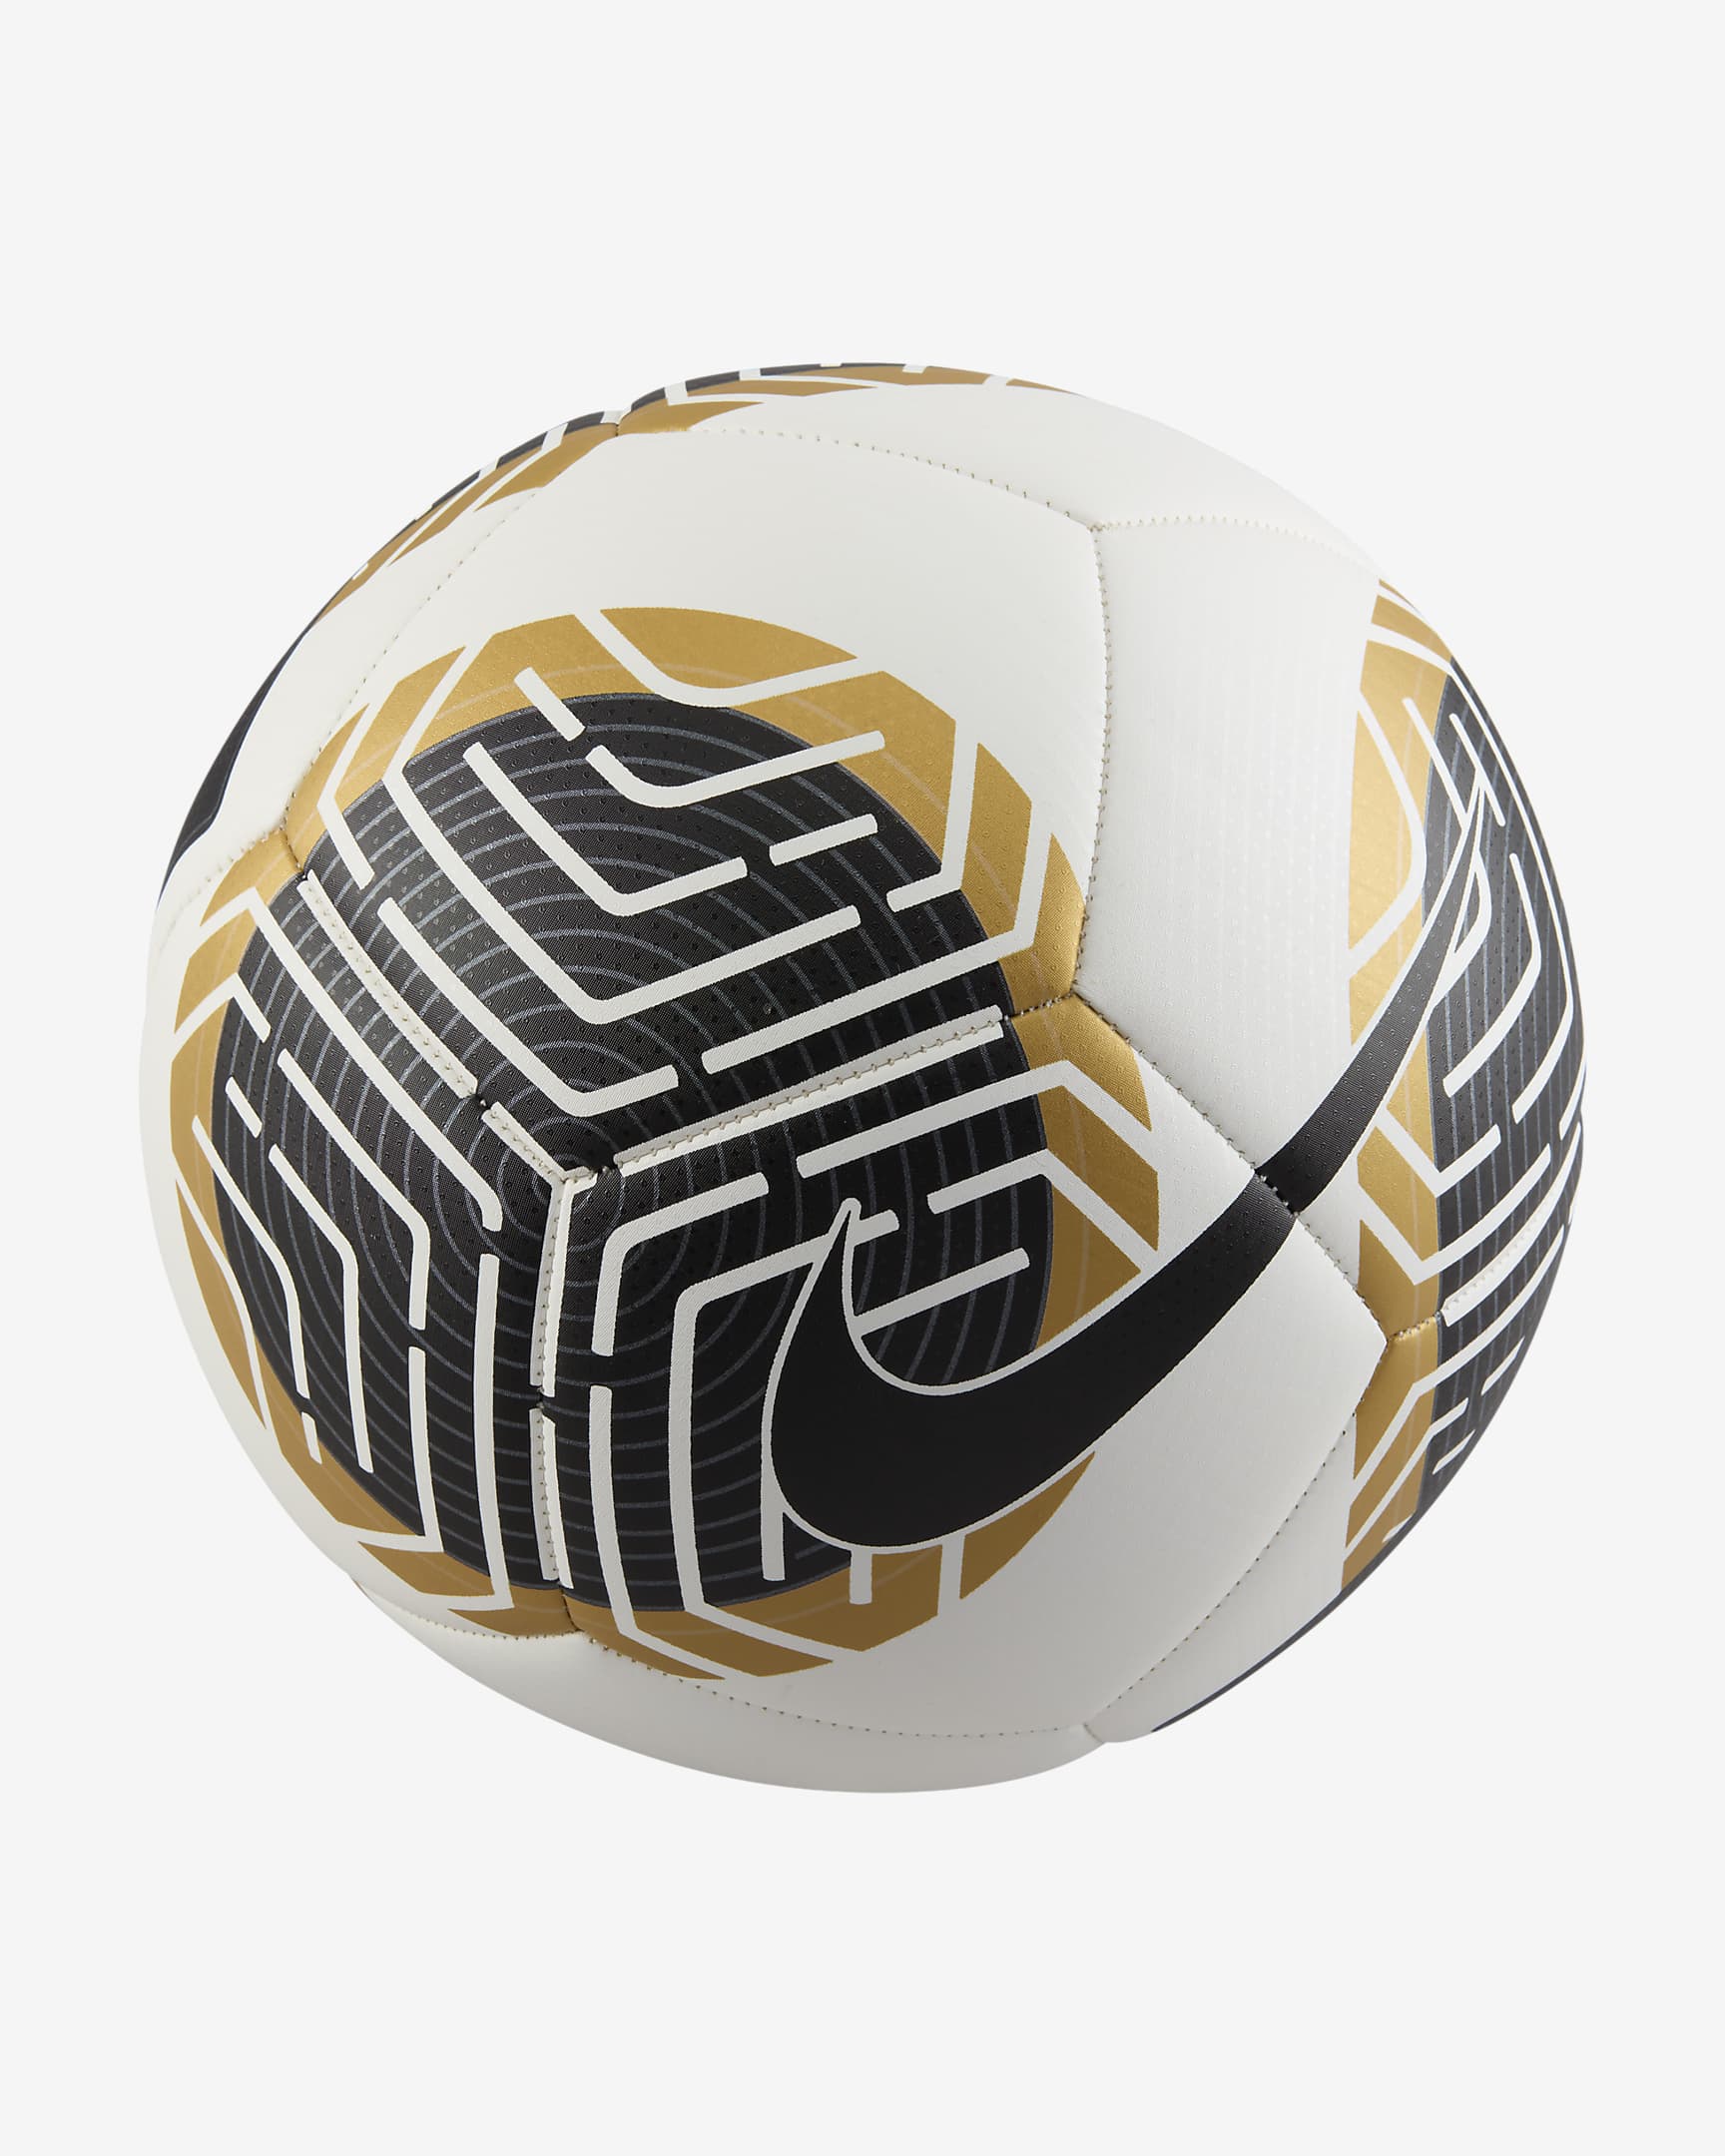 Pallone da calcio Nike Pitch - Bianco/Nero/Oro/Nero